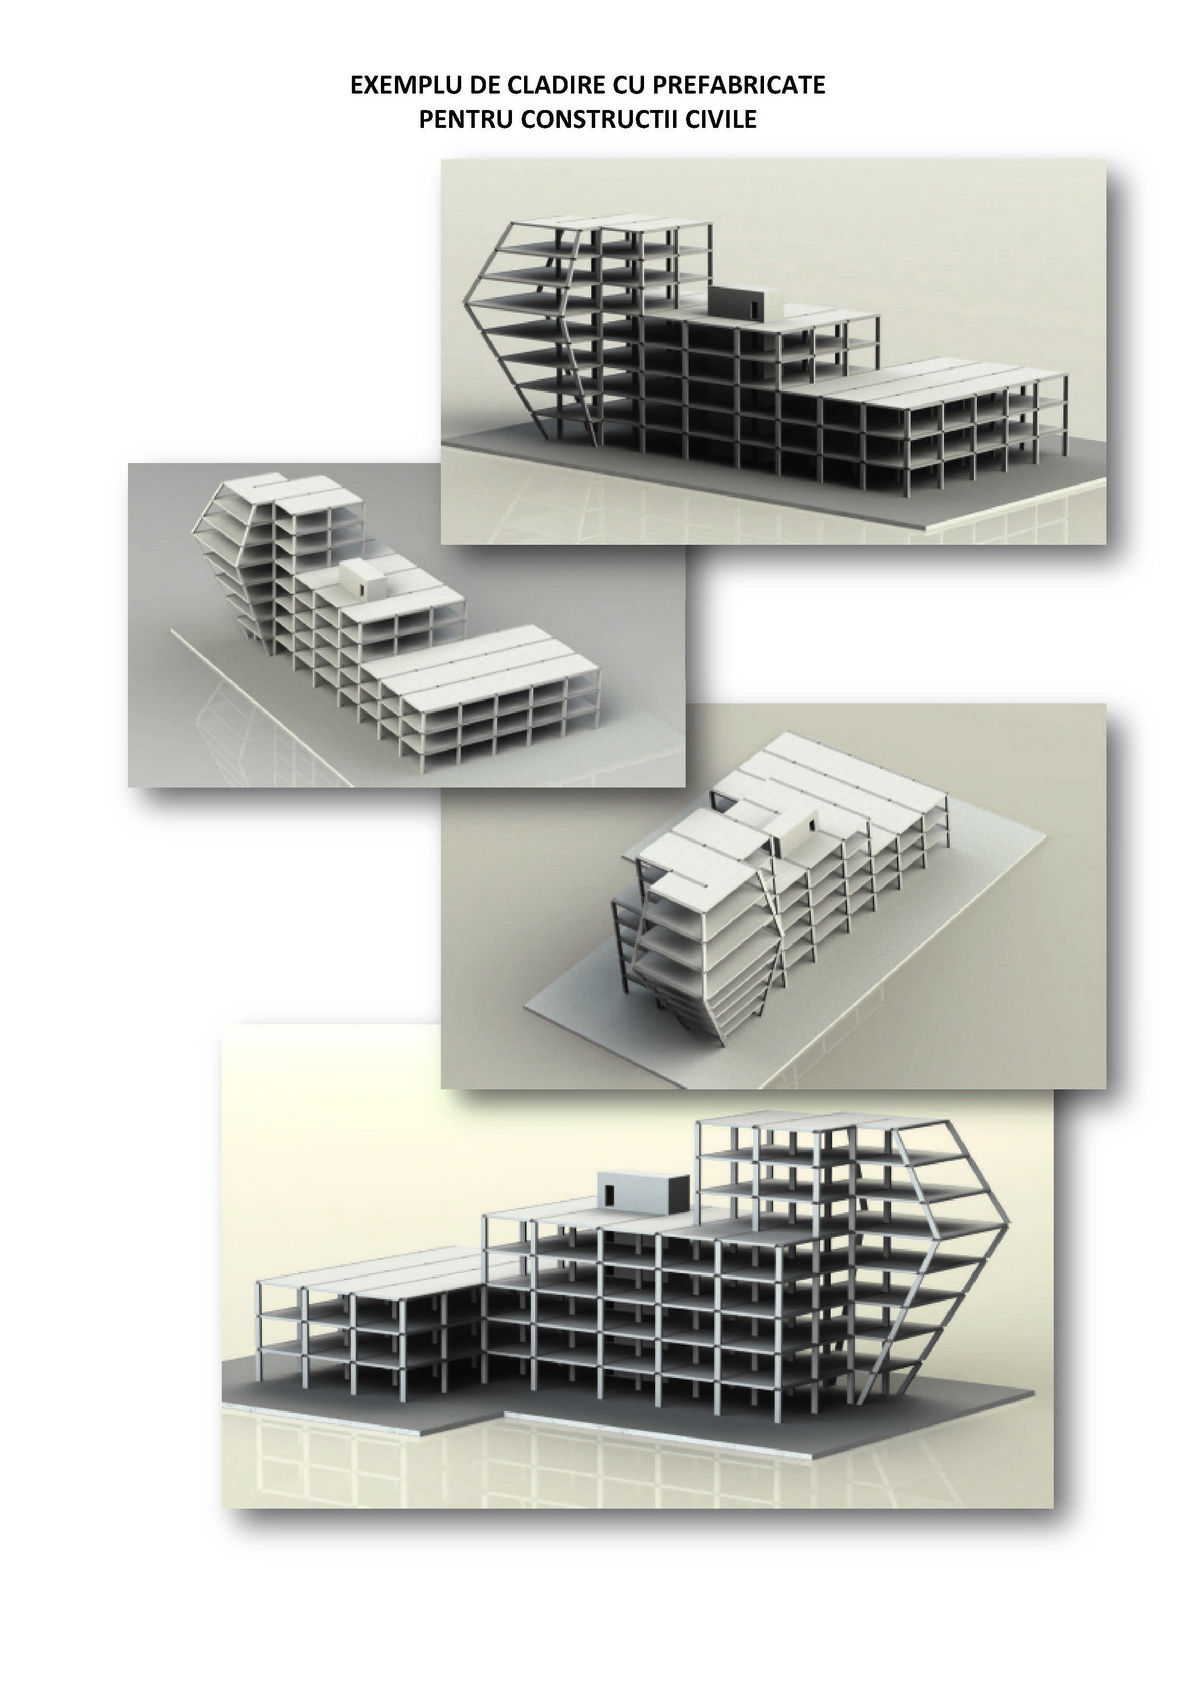 Exemplu de cladire cu prefabricate pentru constructii civile